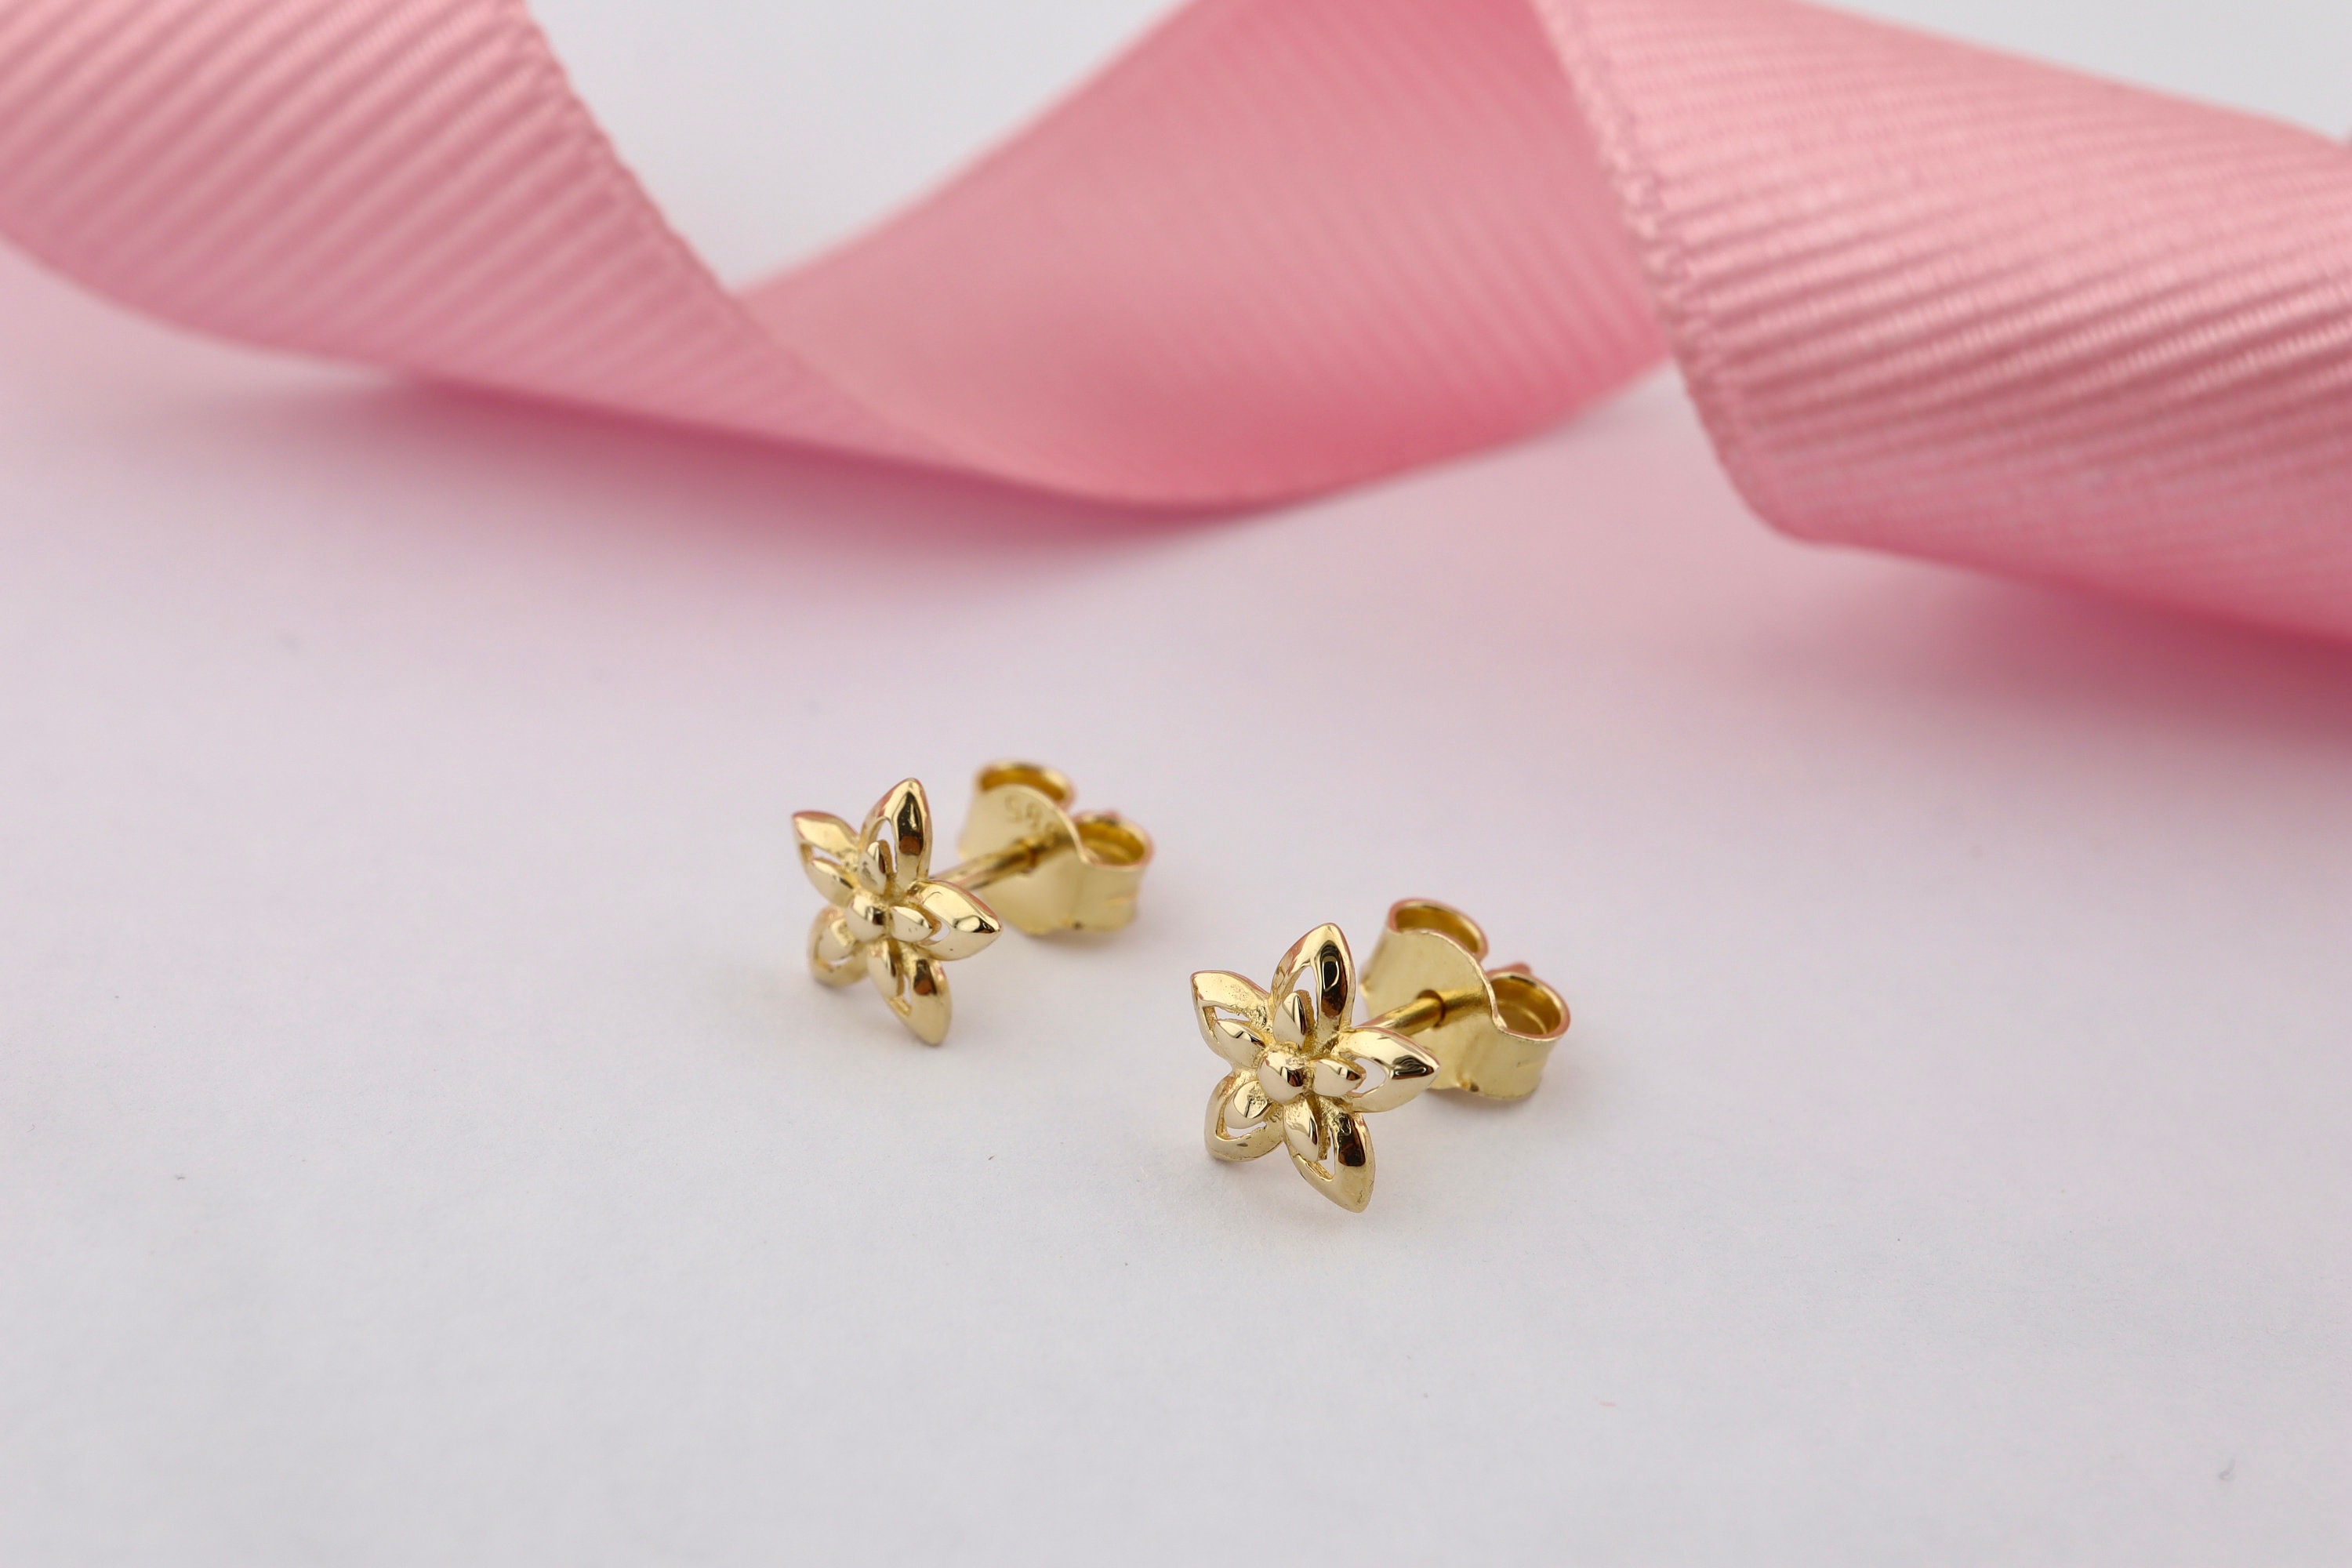 14k Flower Shaped Earrings, Gold Flower Earrings, Gift for Her,star Pattern  Flower Earrings, Stud Earrings, Gift for Kids, Gift for Her - Etsy